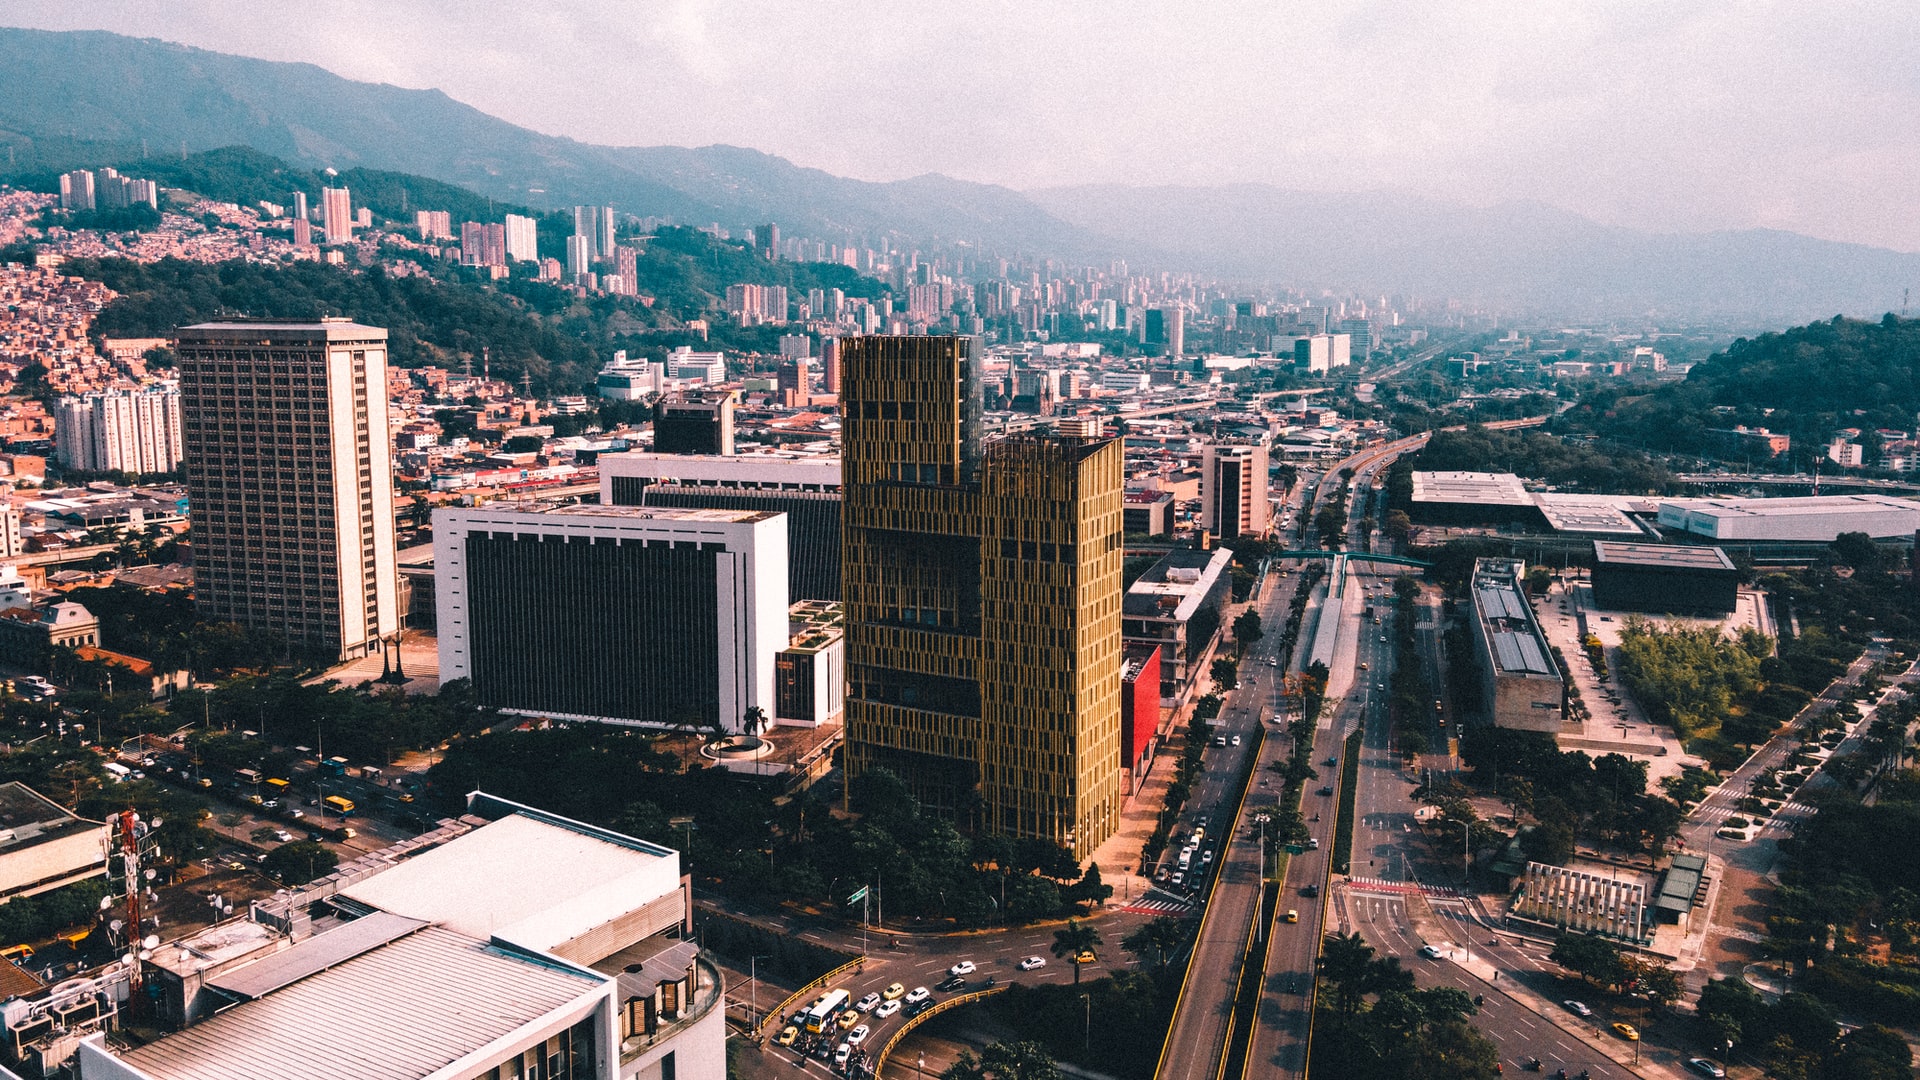 Situata a metà strada tra La Candelaria e El Poblado, Plaza Mayor è destinata a diventare un nuovo quartiere culturale e finanziario di Medellín.